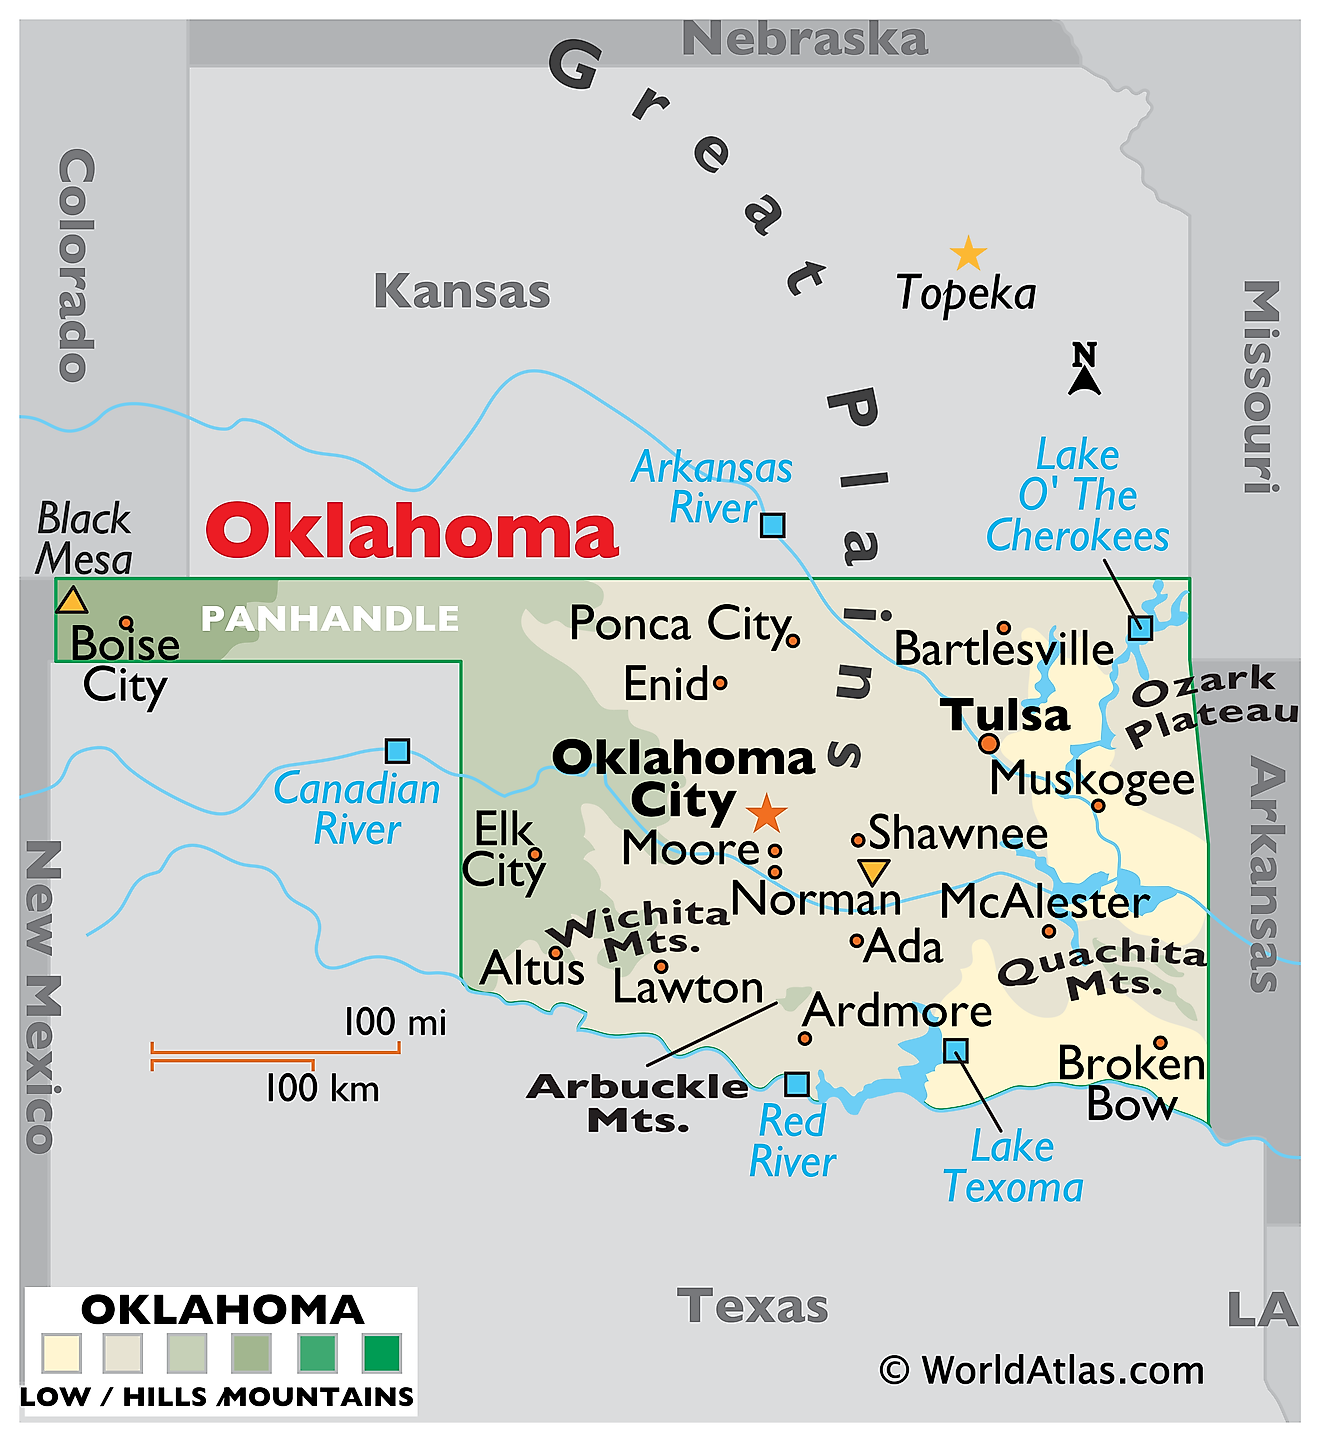 Mappa fisica di Oklahoma. Essa mostra le caratteristiche fisiche di Oklahoma tra cui catene montuose, grandi fiumi e laghi.